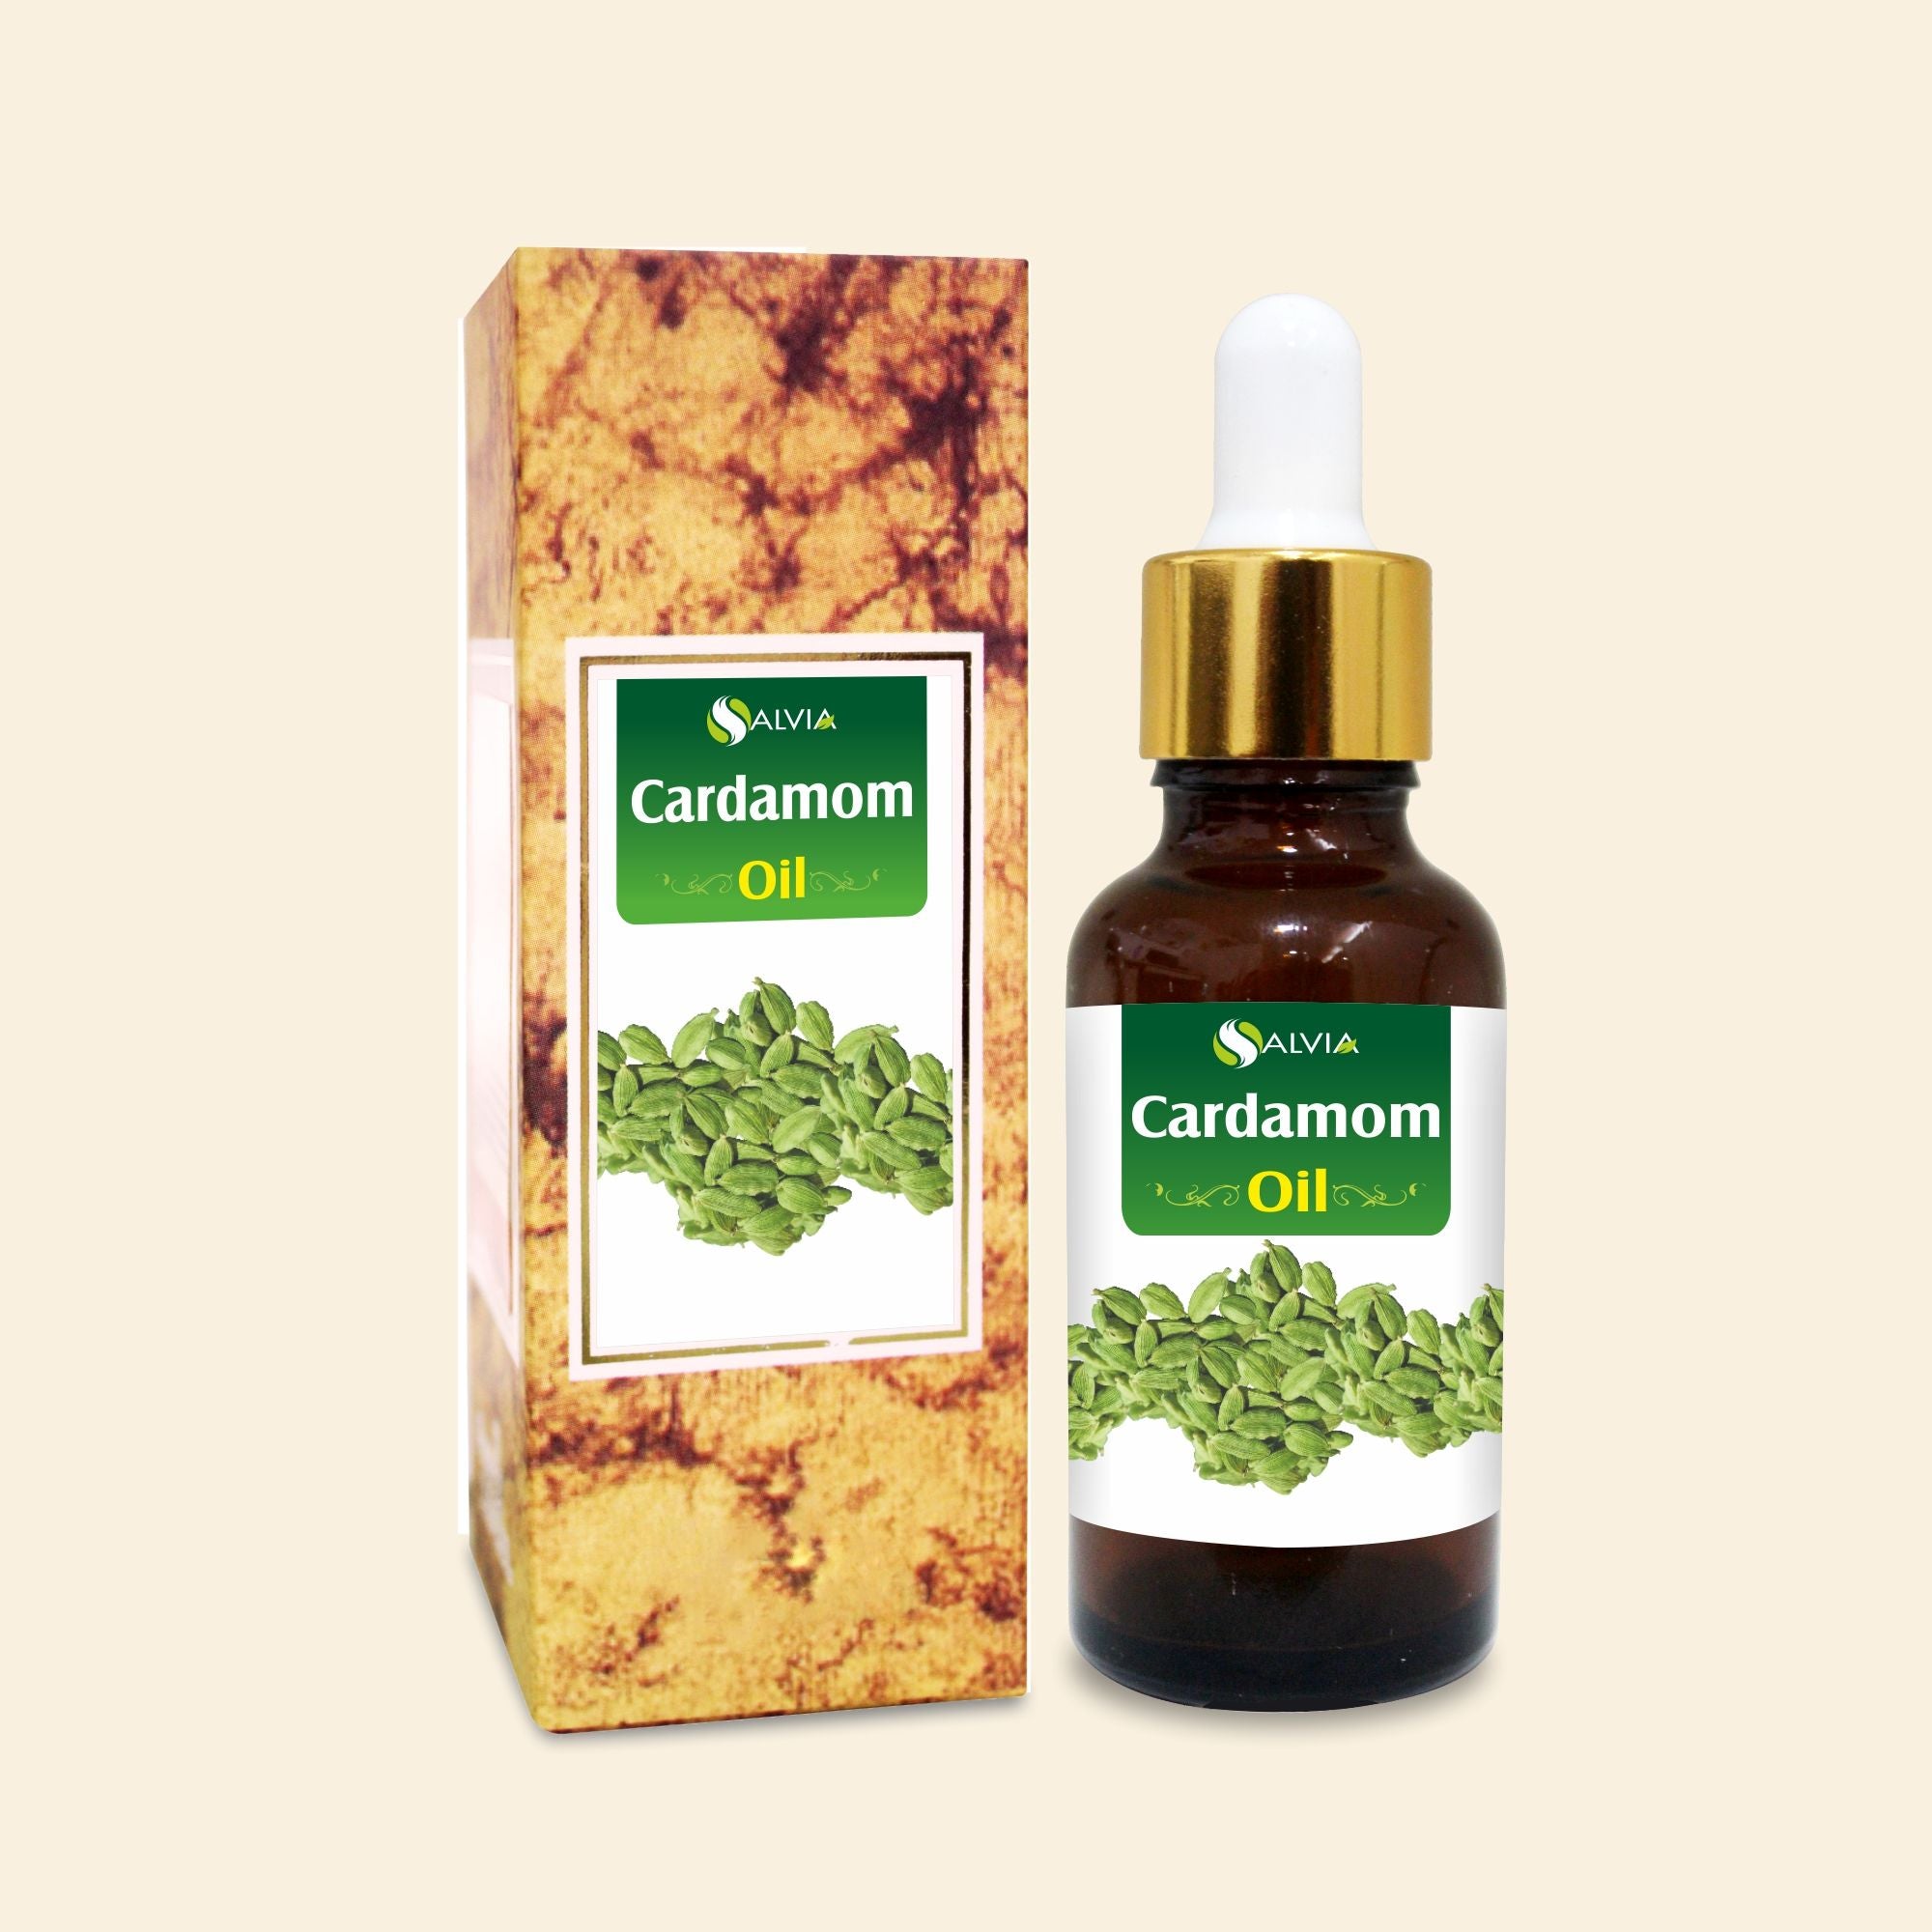 Salvia Natural Essential Oils Cardamom Oil (Elettaria cardamomum) 100% Natural Pure Essential Oil